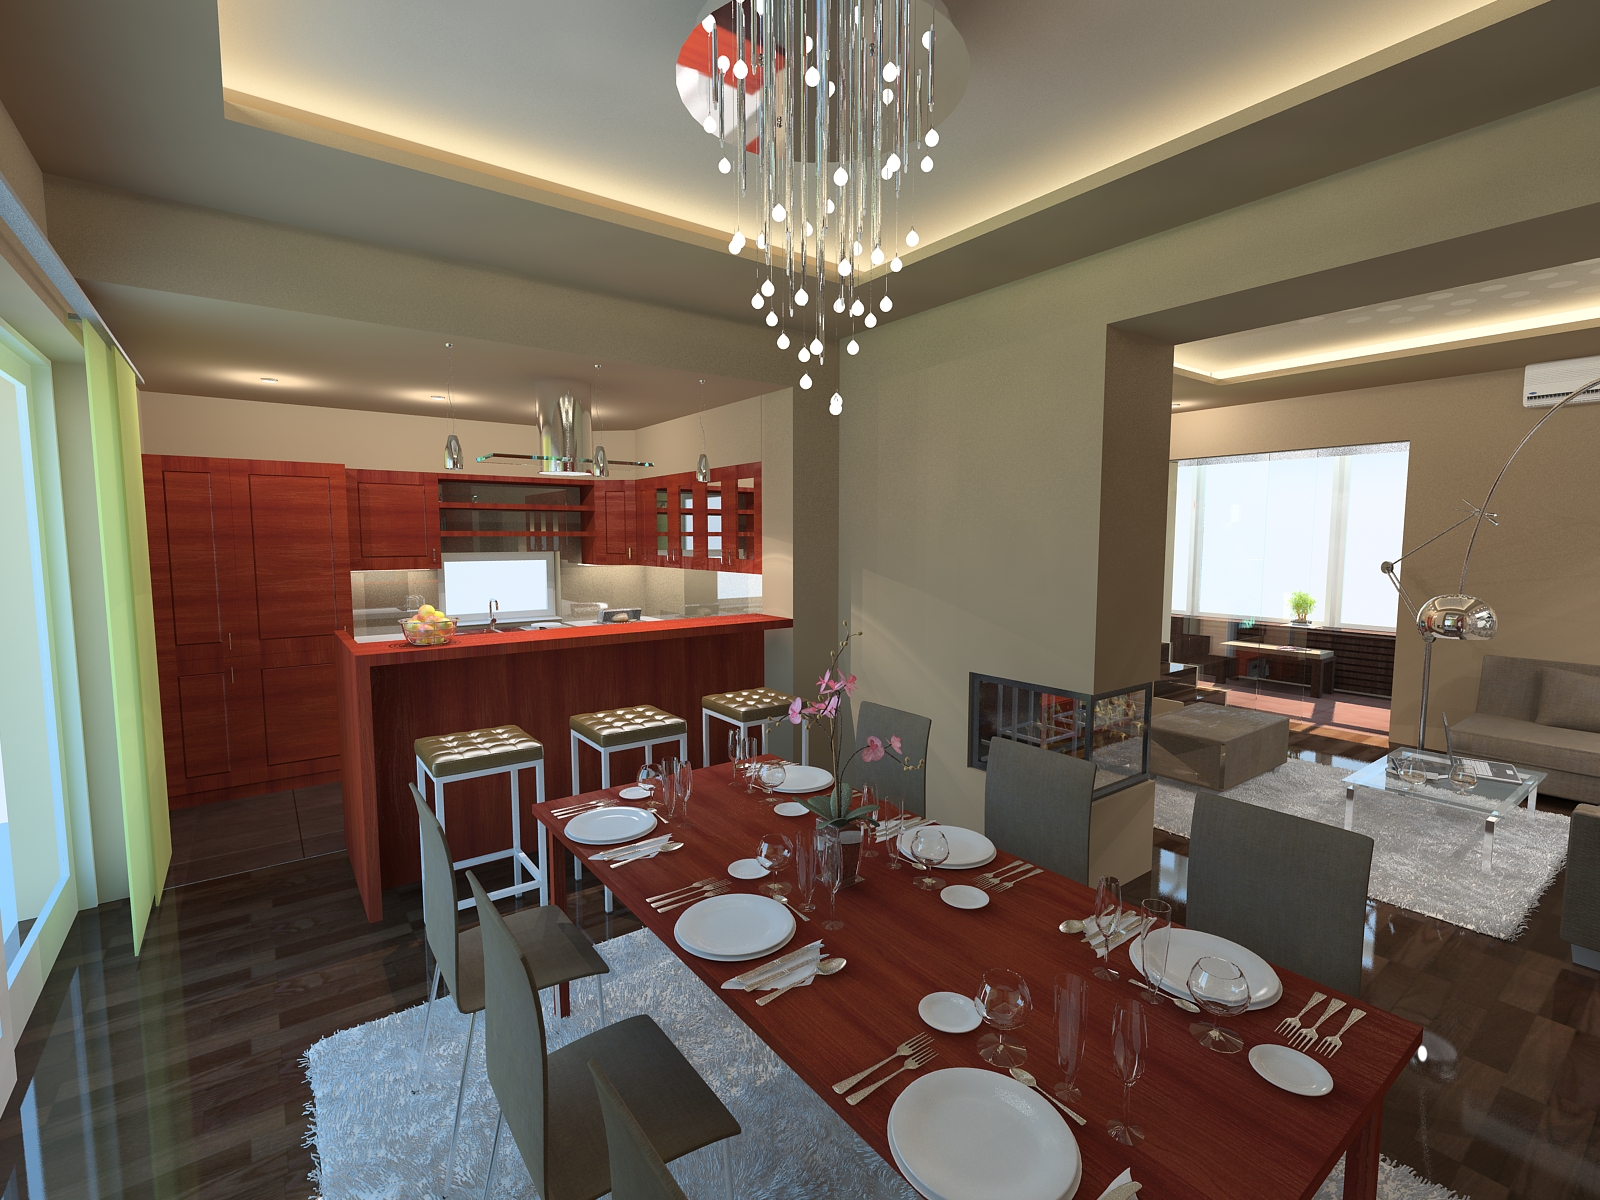 Étkező látványterv / Dining room - architectural visualisation